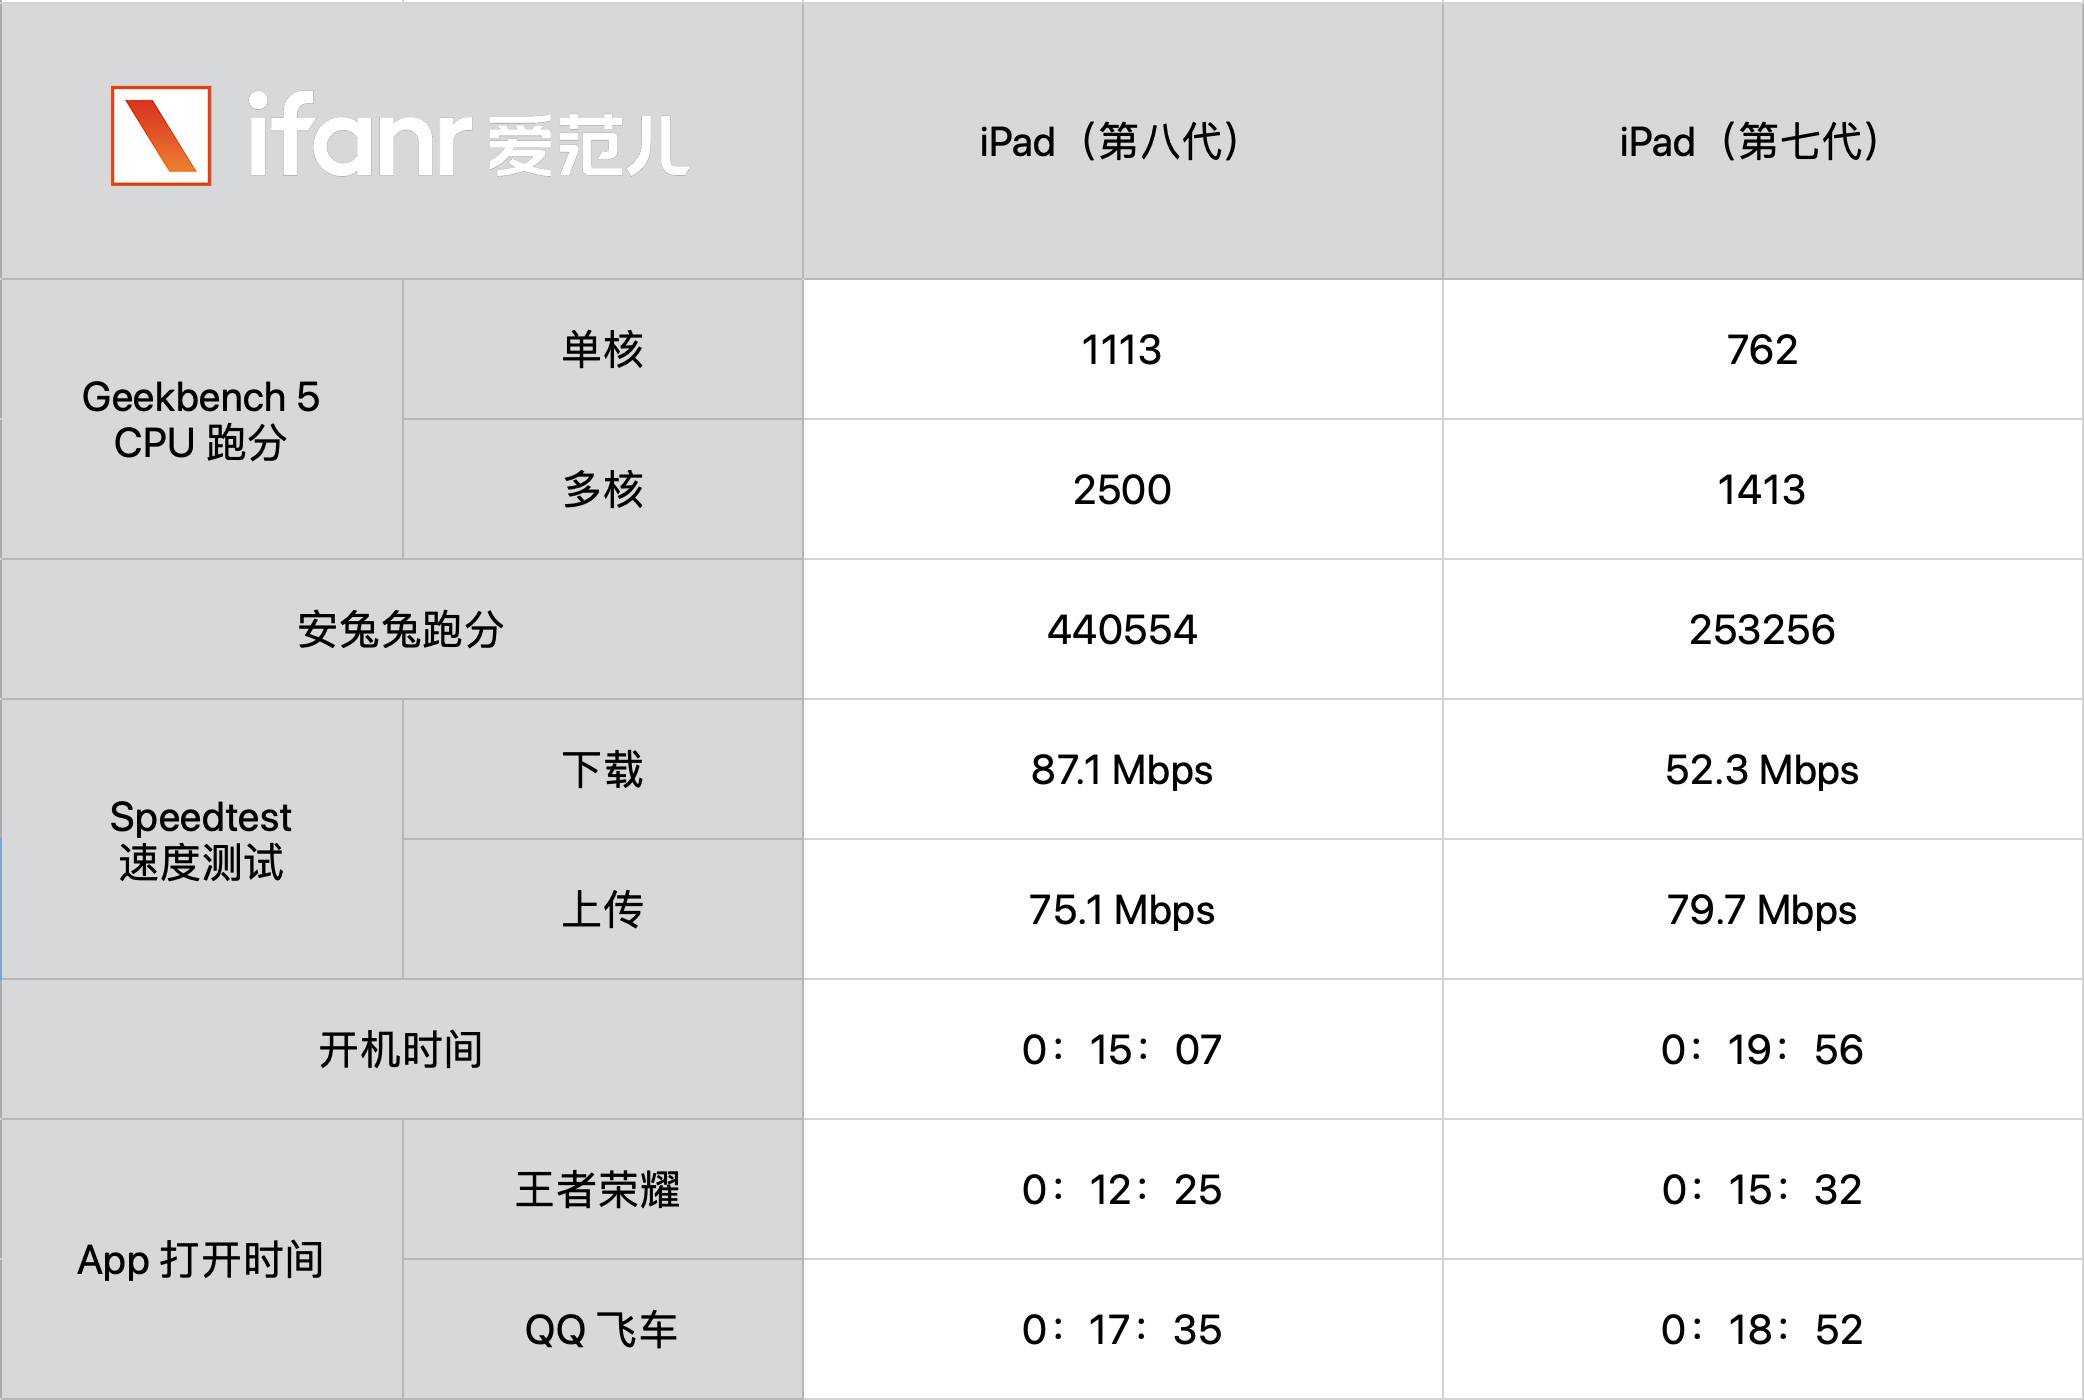 bwahbhwb - Recensione iPad 8: anche il valore è eccezionale, potrebbe essere la prima scelta per tablet per 3000 yuan